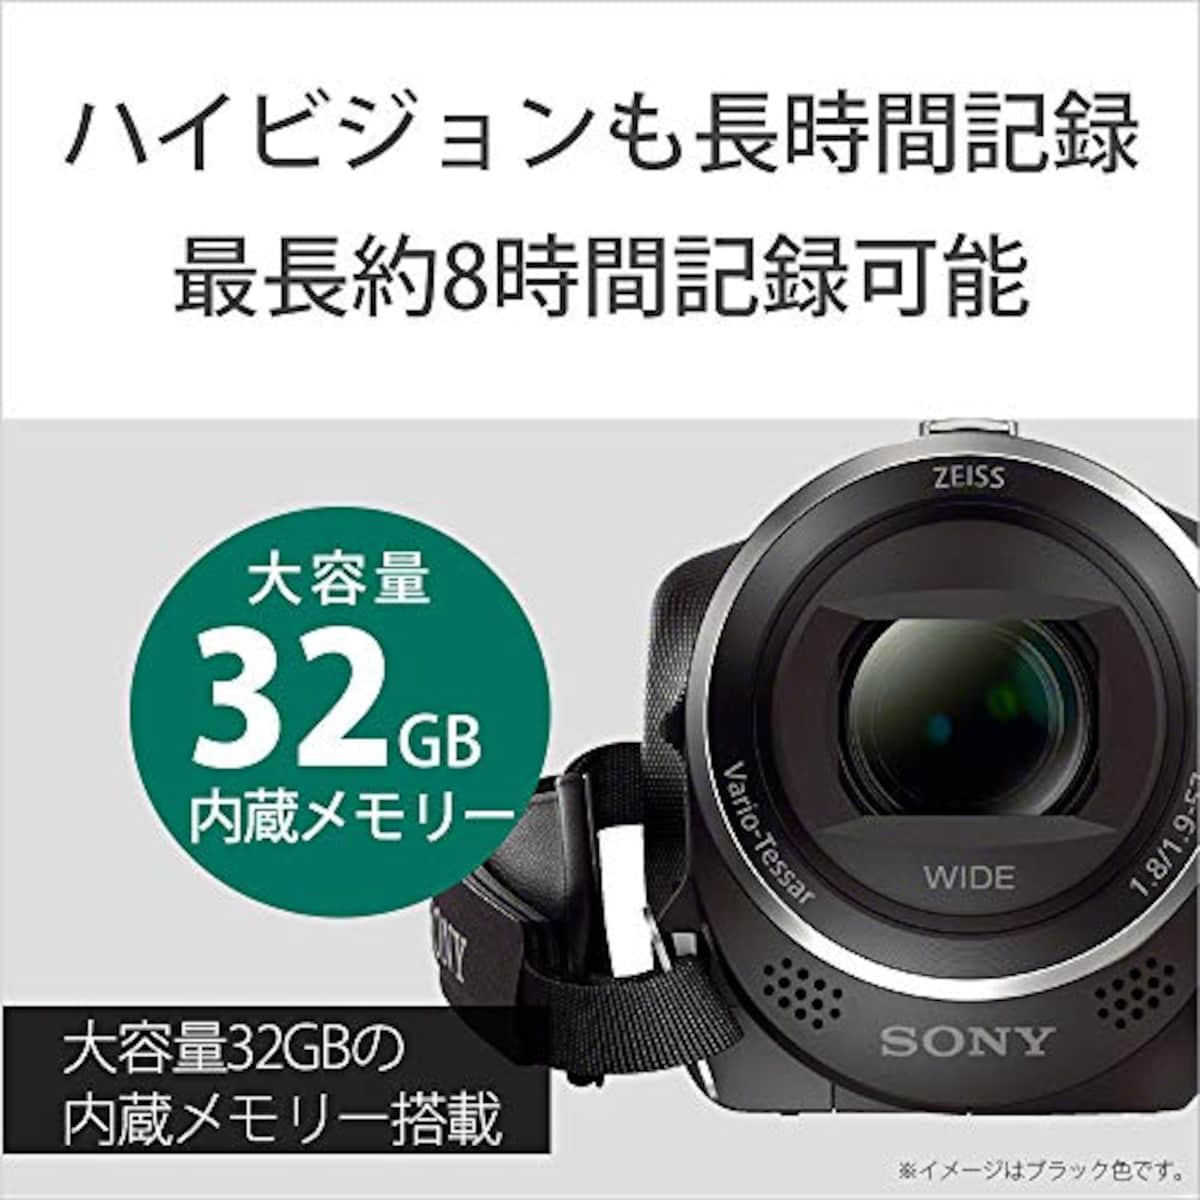  【CX470 と ケース&ストラップ セット】 大切なカメラをキズや汚れからガードしたい方に。HDR-CX470 ホワイト + LCS-MCS2 ライトブラウン画像3 